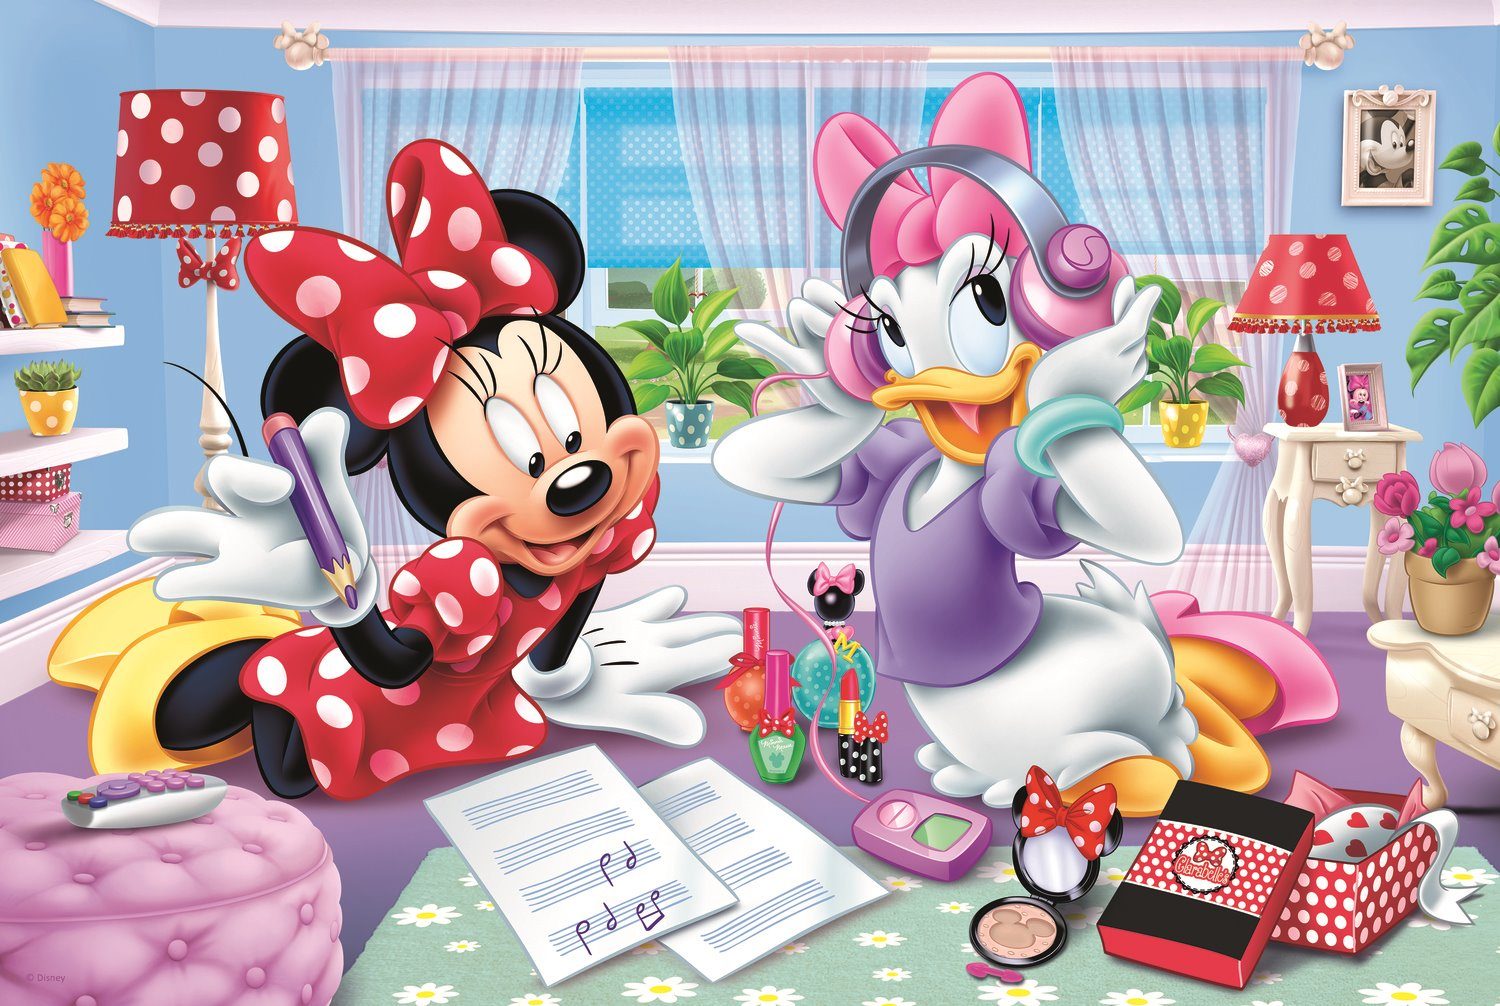 Trefl 160 Pezzi Bambini Grande Disney Minnie Irrigazione The Fiori Puzzle Nuovo 